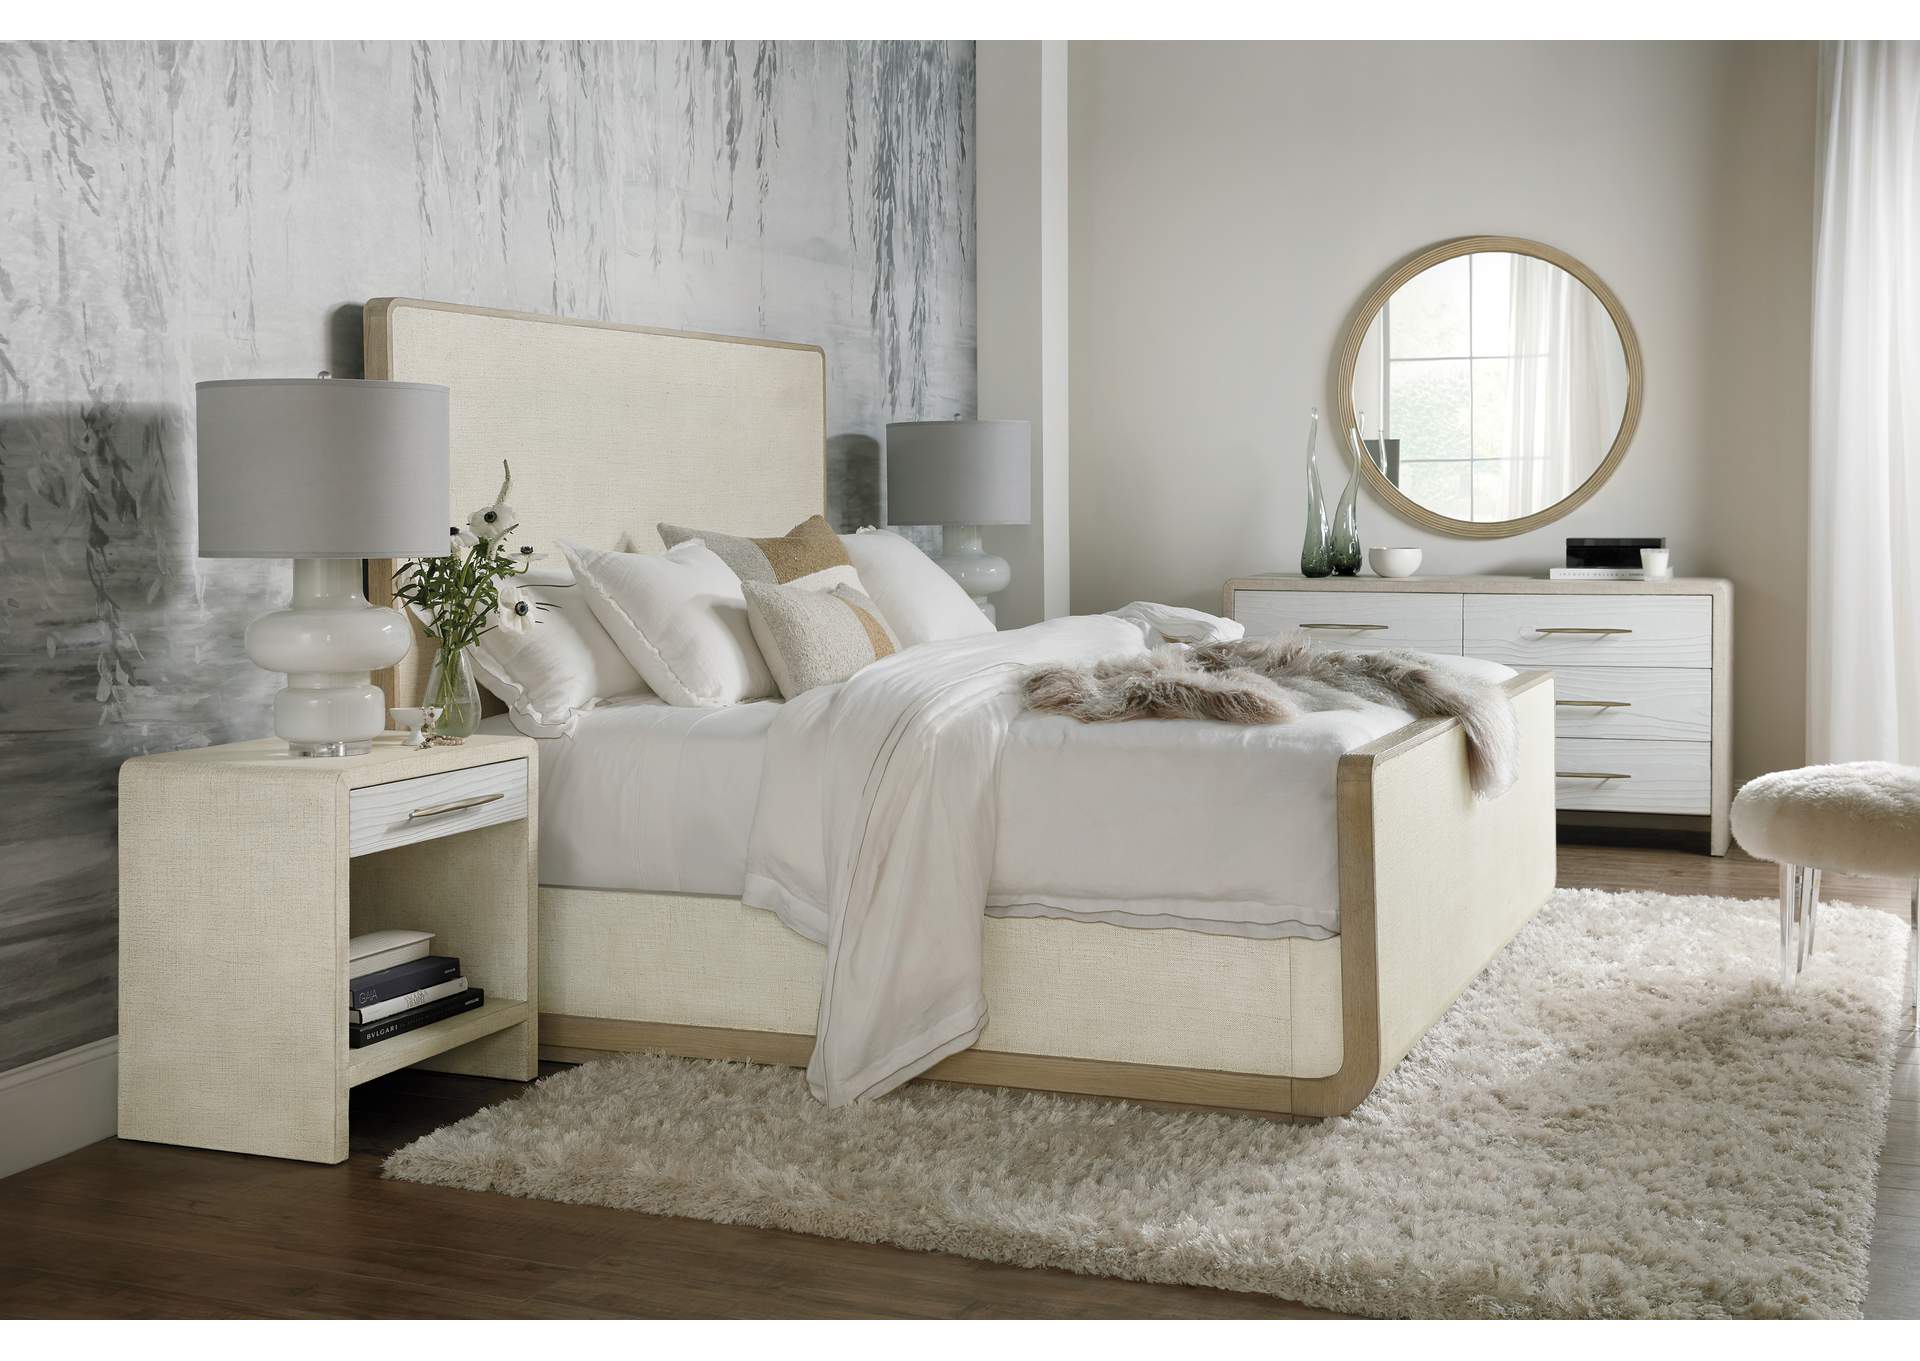 Cascade King Sleigh Bed,Hooker Furniture